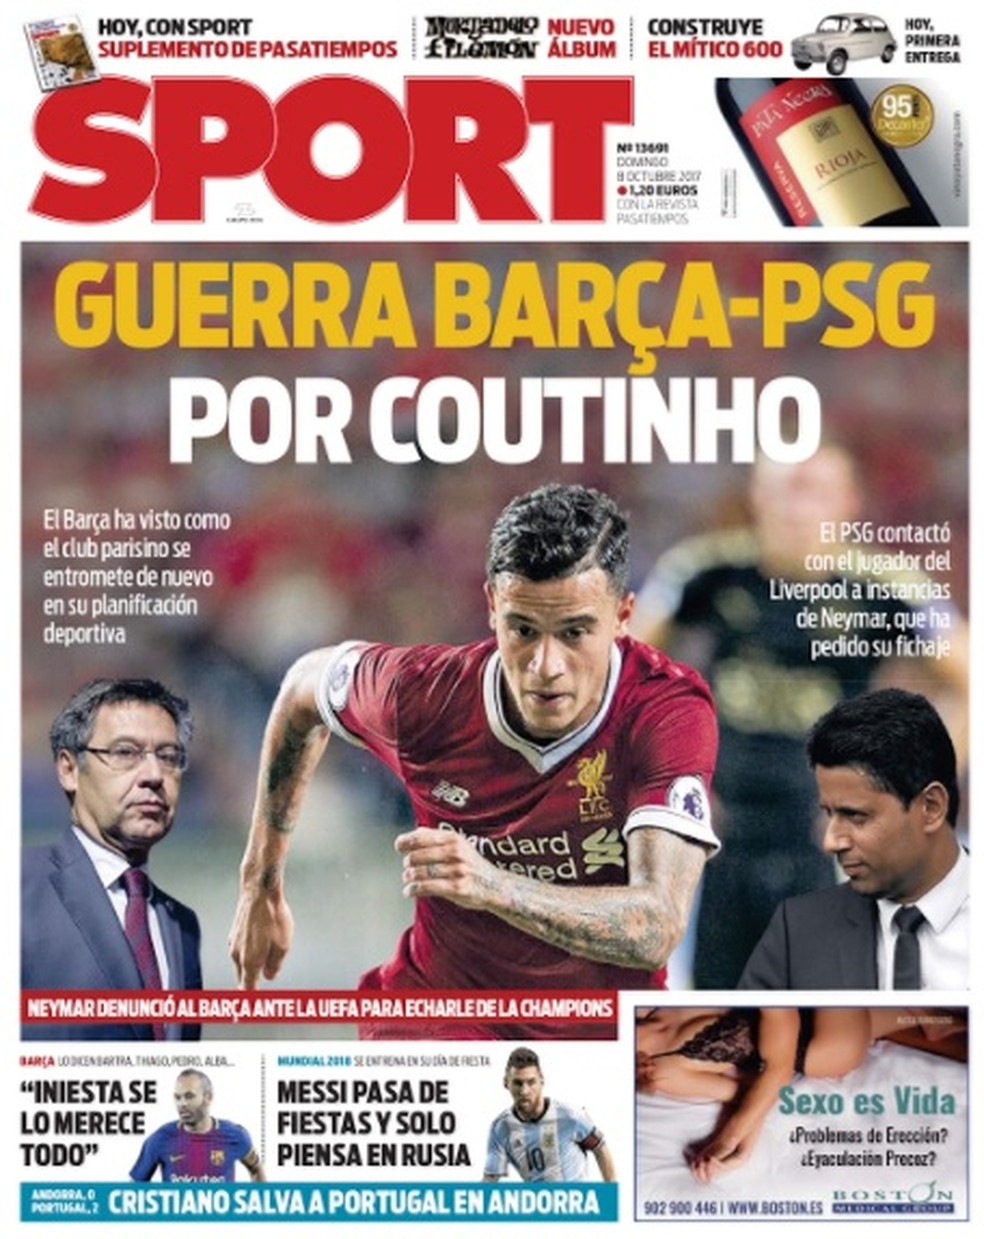 Capa do jornal Sport com a disputa entre Barcelona e Paris Saint-Germain por Philippe Coutinho  (Foto: Reprodução)